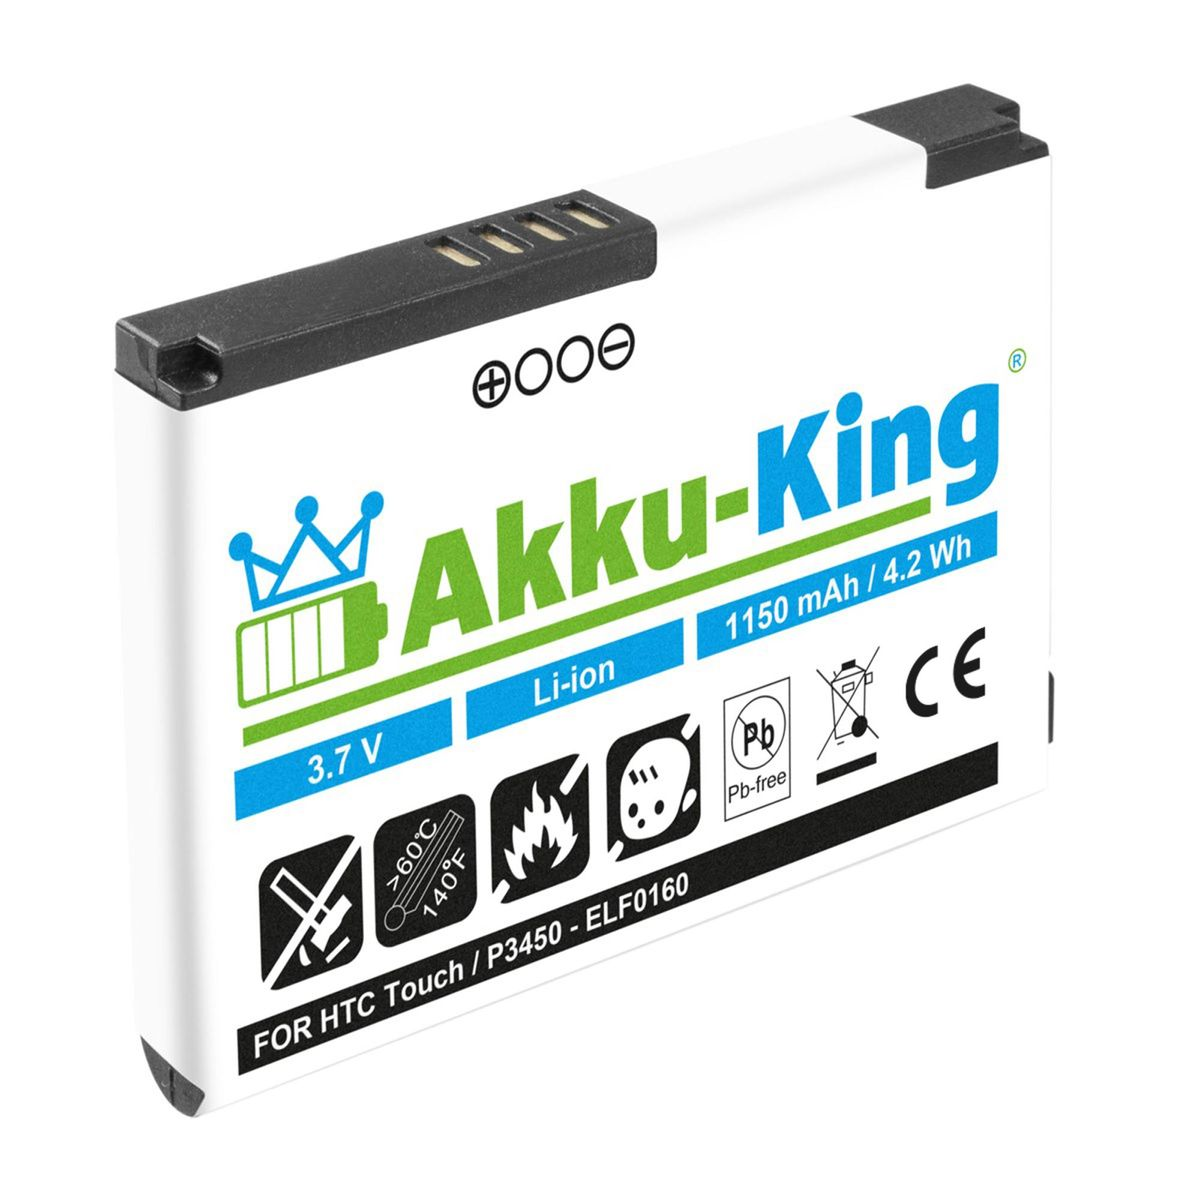 AKKU-KING Akku kompatibel HTC 1150mAh 3.7 S230 mit BA Li-Ion Volt, Handy-Akku